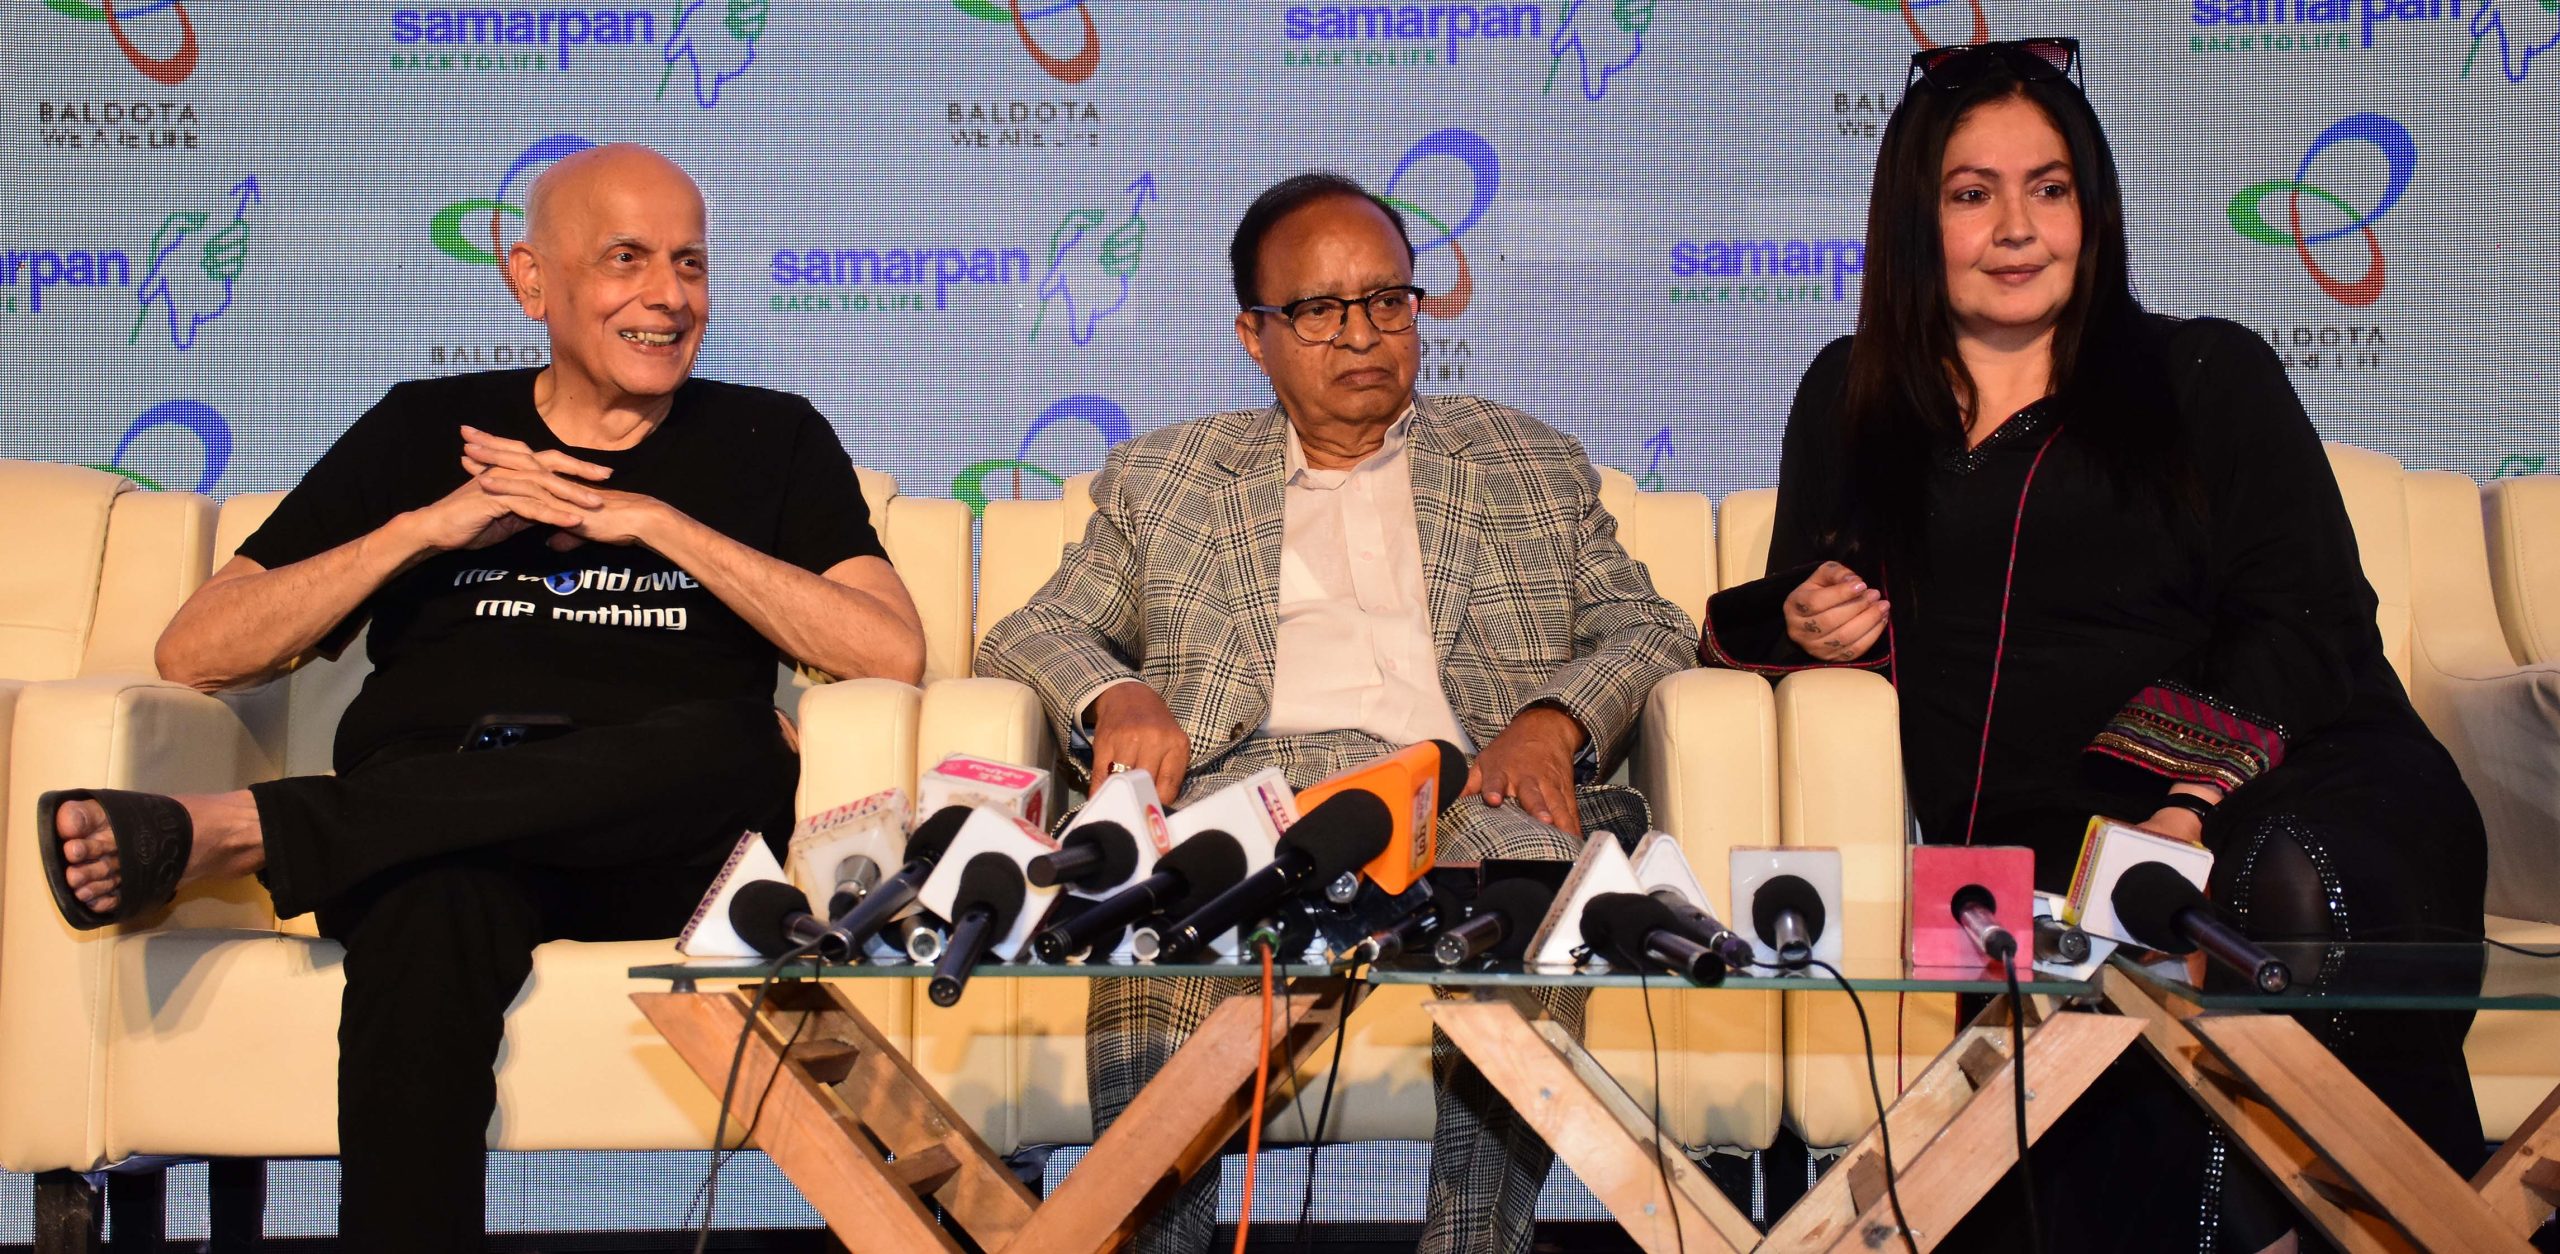 Mahesh Bhatt and Pooja Bhatt launches ‘Samarpan’!